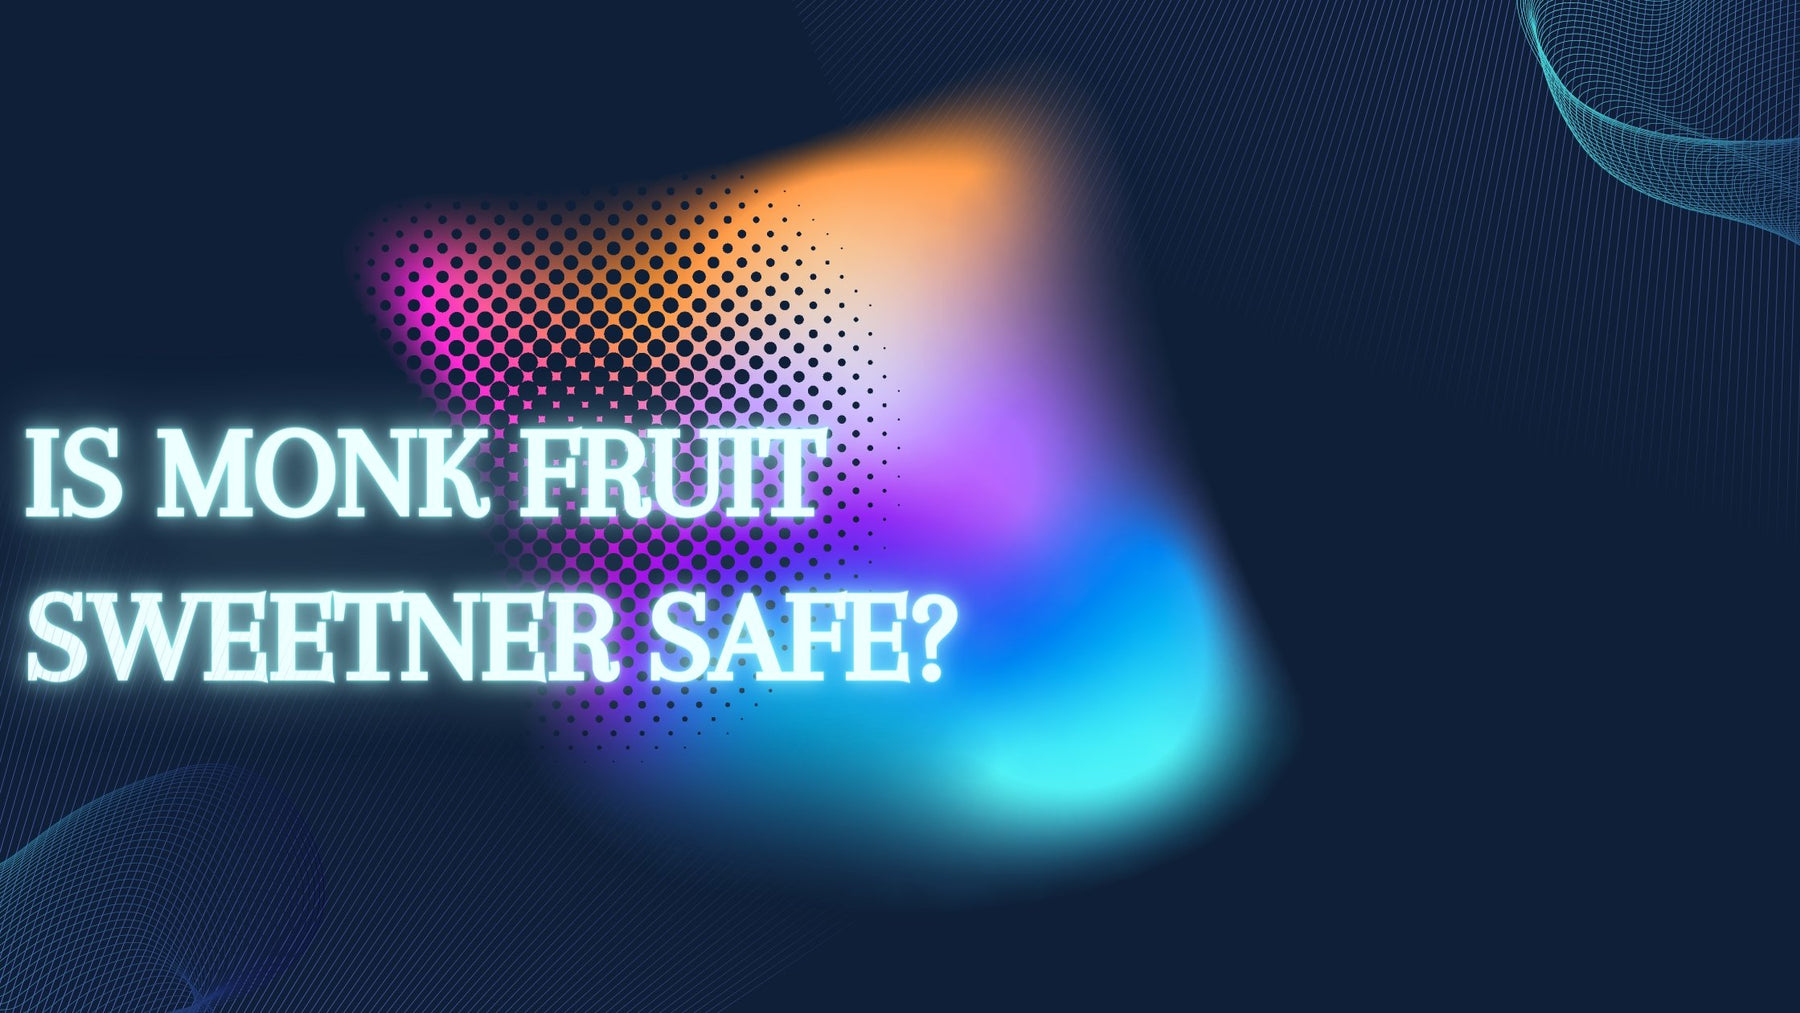 Is Monk Fruit Sweetener Safe? - Roshni Sanghvi